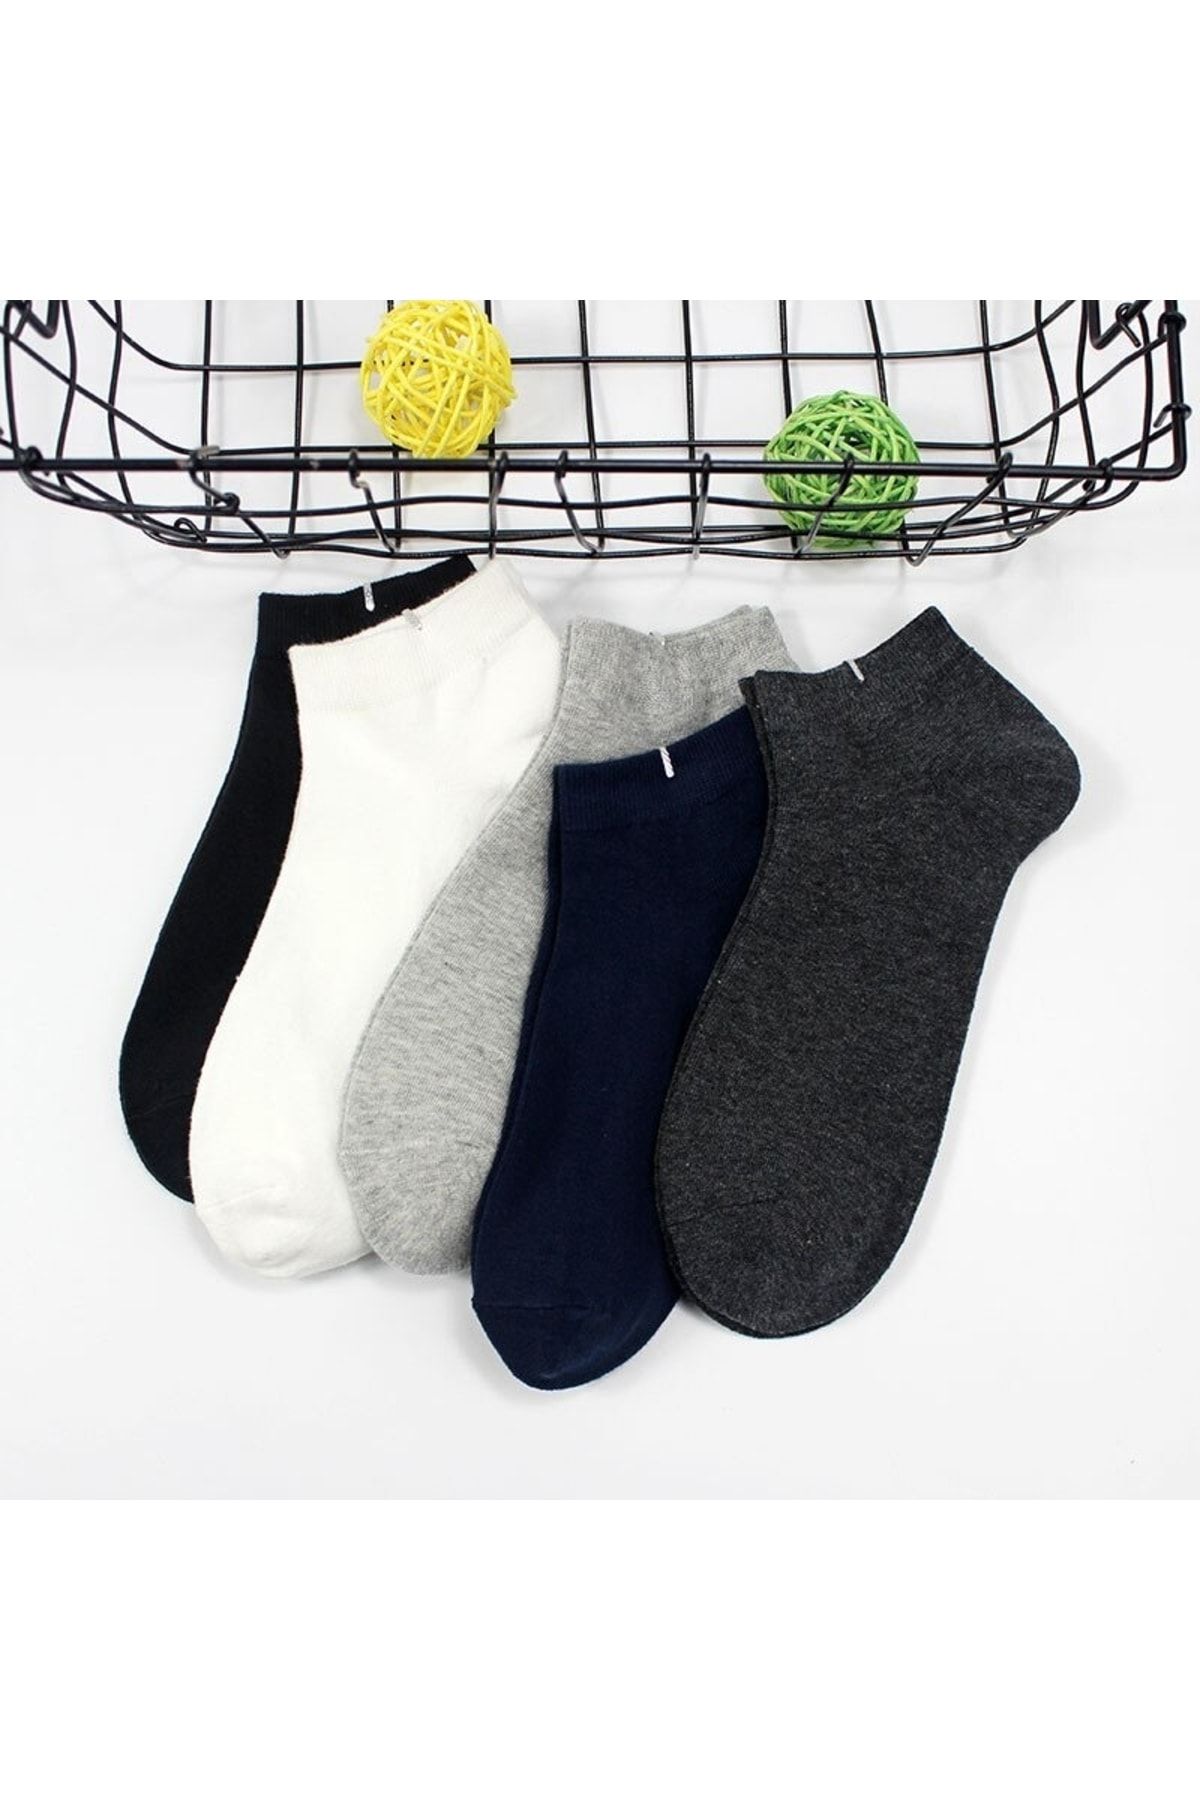 çorapmanya 5 Çift Pamuklu Çok Renkli Erkek Patik Çorap Bilek Boy